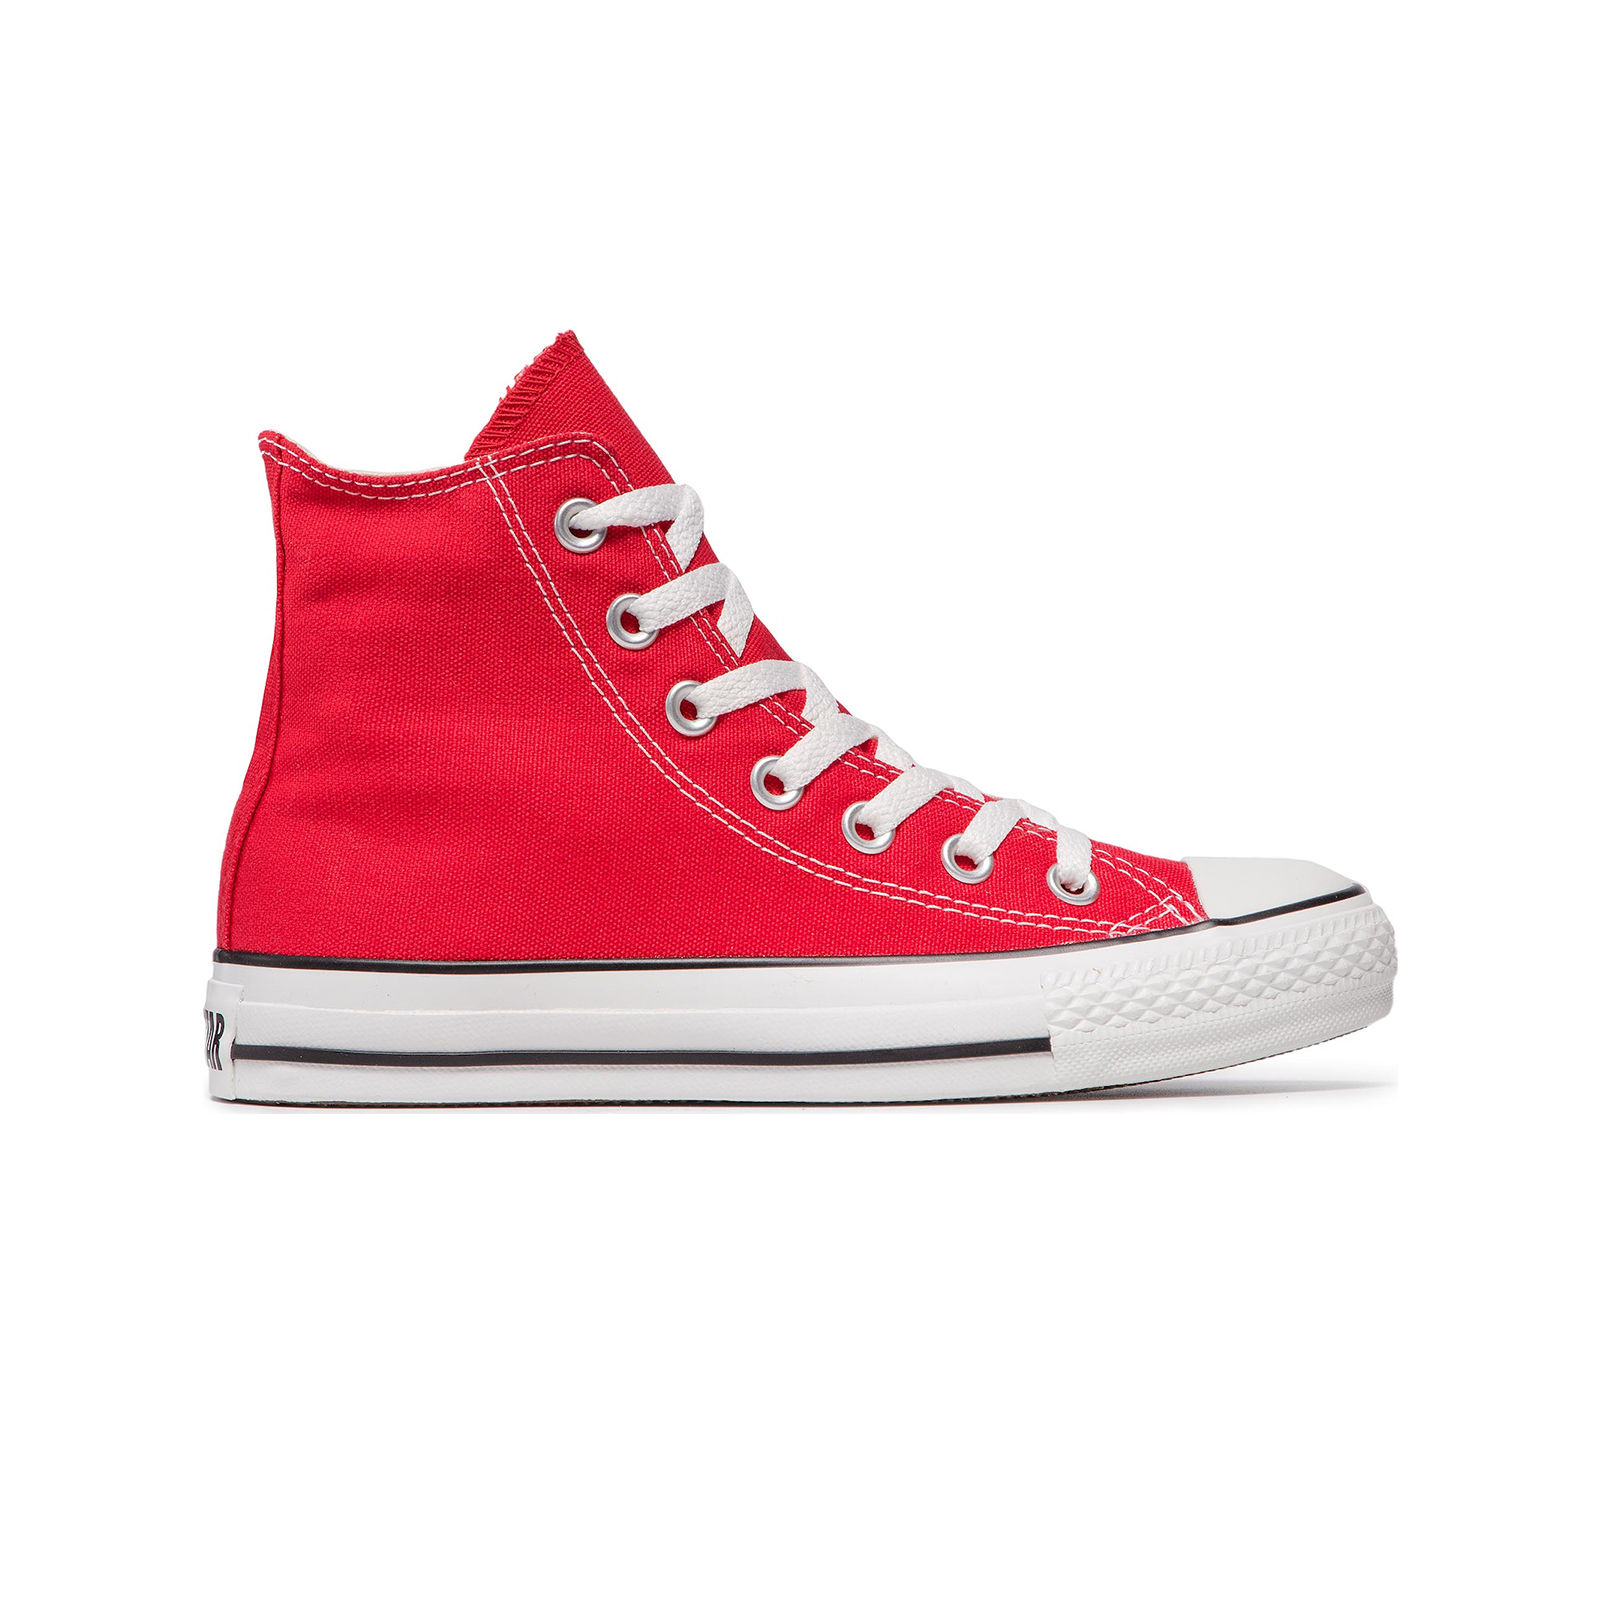 Ανδρικά > Παπούτσια > Sneaker > Μποτάκι High Cut Converse - CHUCK TAYLOR ALL STAR - 600-RED